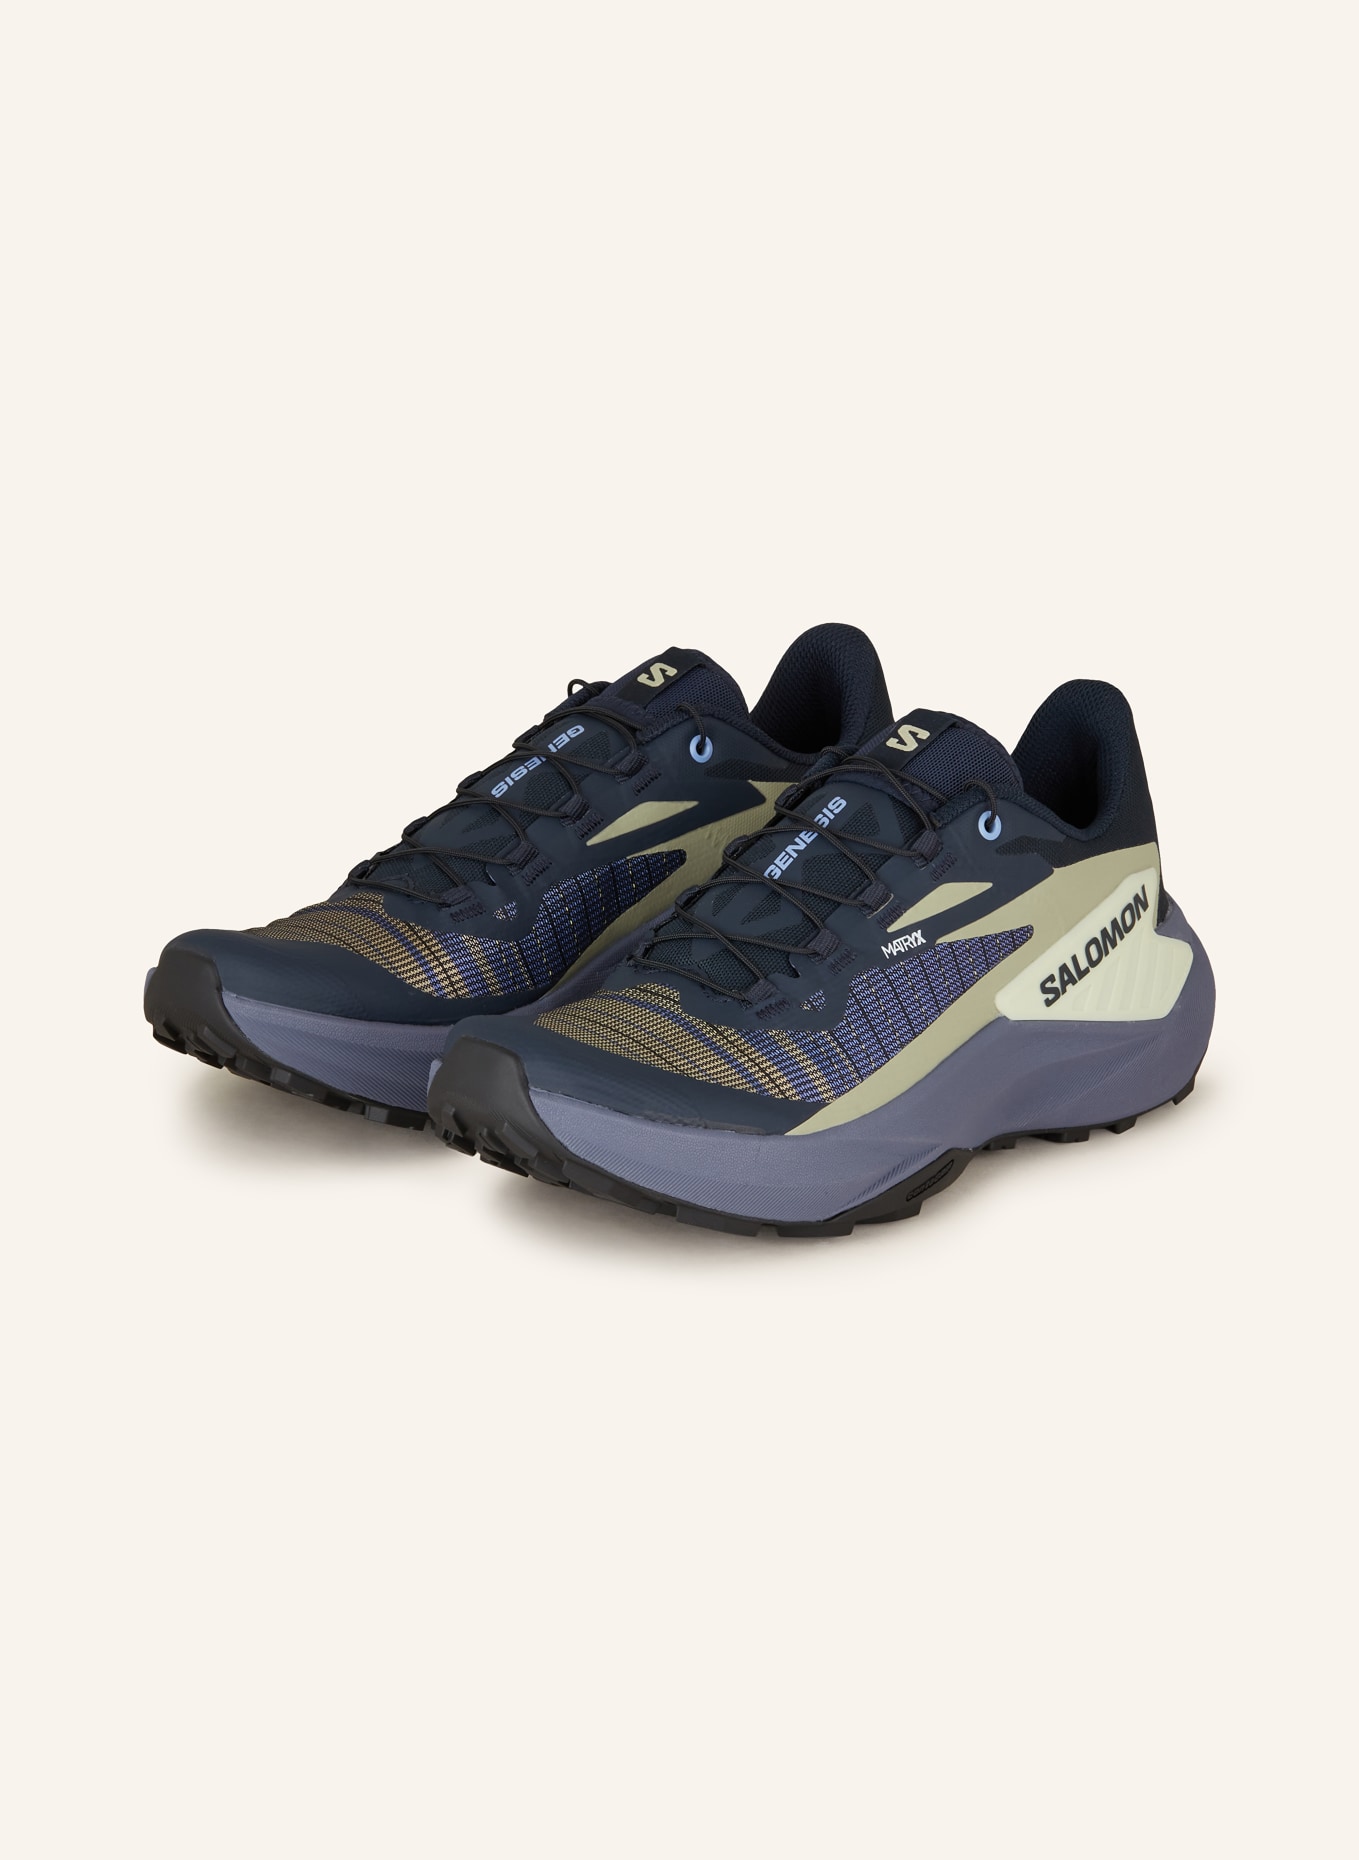 SALOMON Trailrunning-Schuhe GENESIS, Farbe: BLAU/ SCHWARZ/ KHAKI (Bild 1)